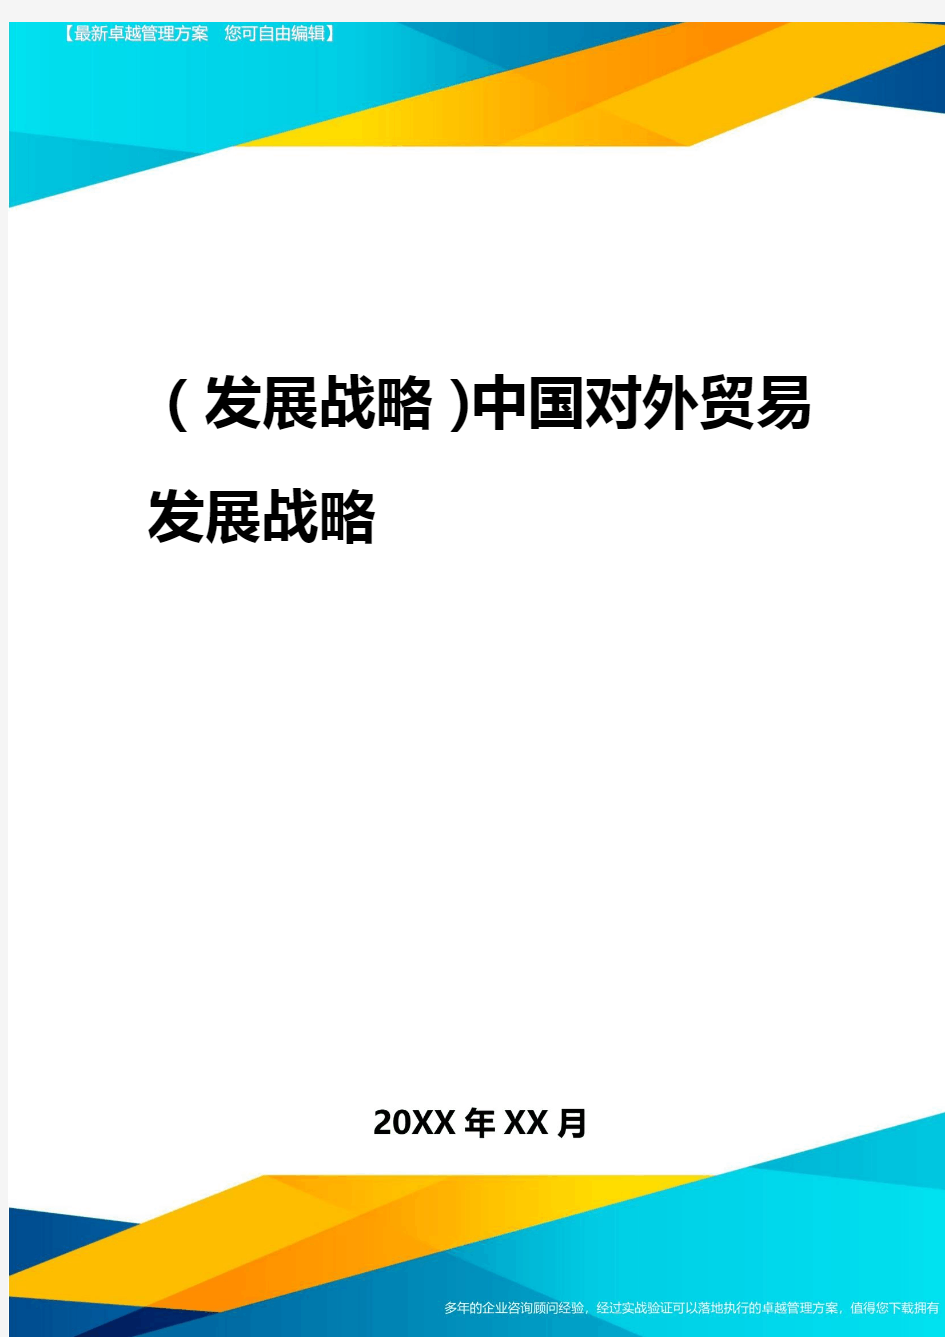 2020年(发展战略)中国对外贸易发展战略